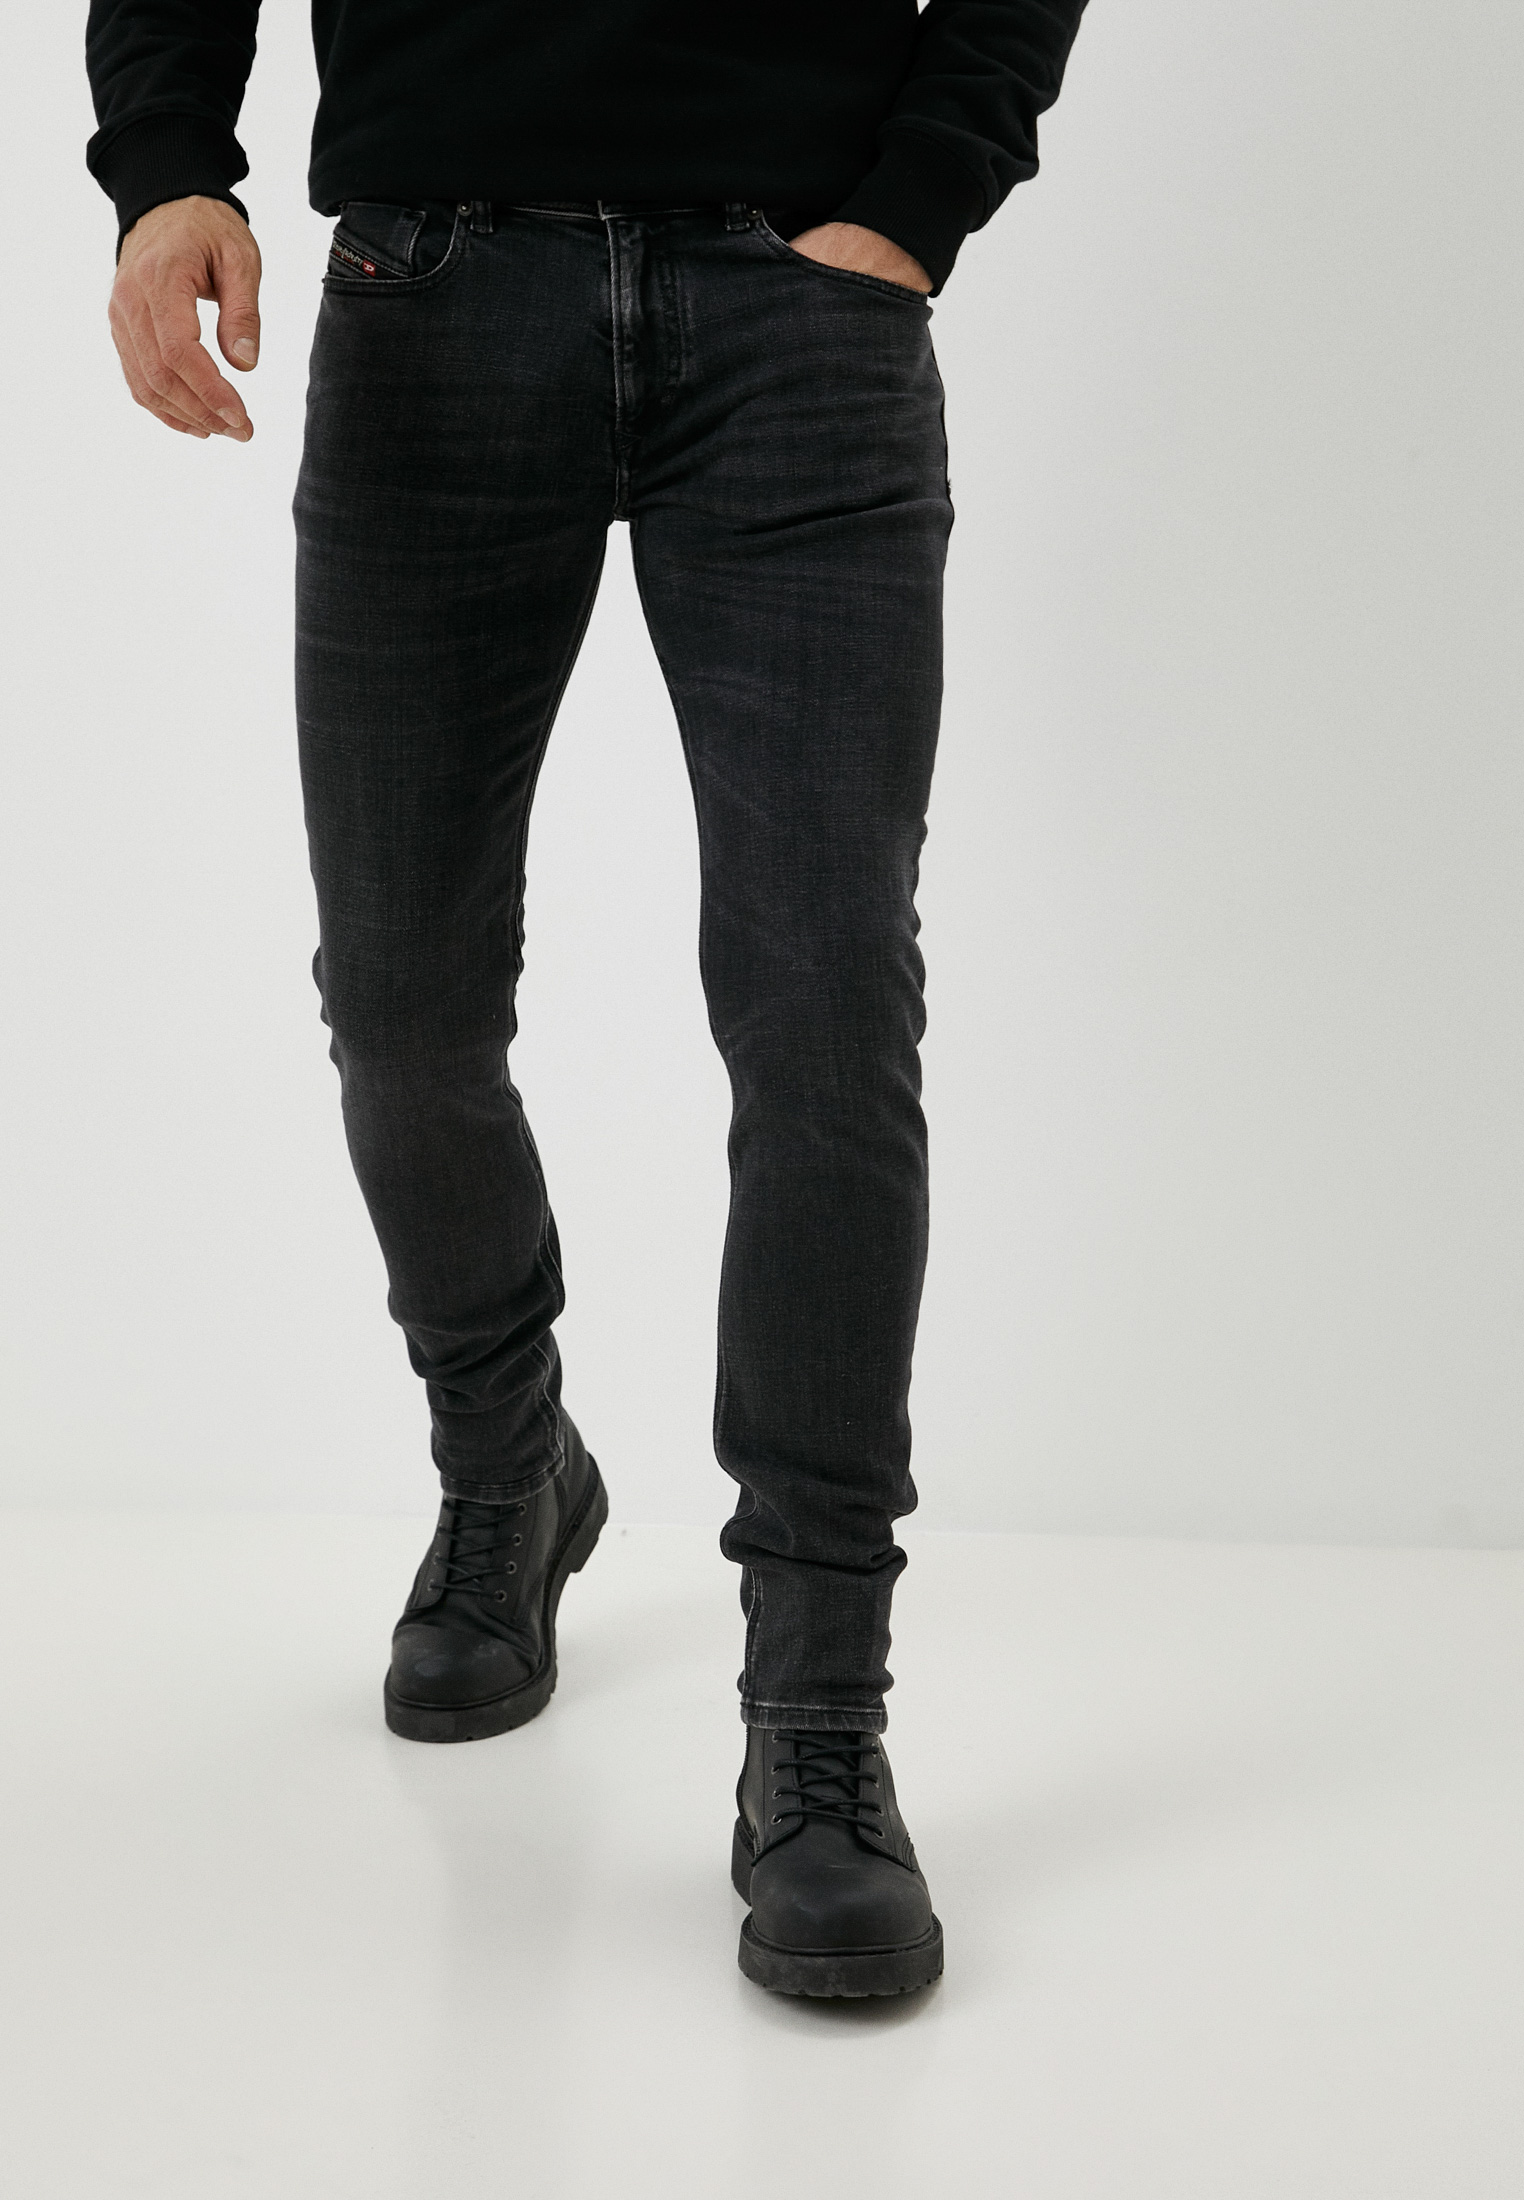 Мужские зауженные джинсы Diesel (Дизель) A0359409C23: изображение 1